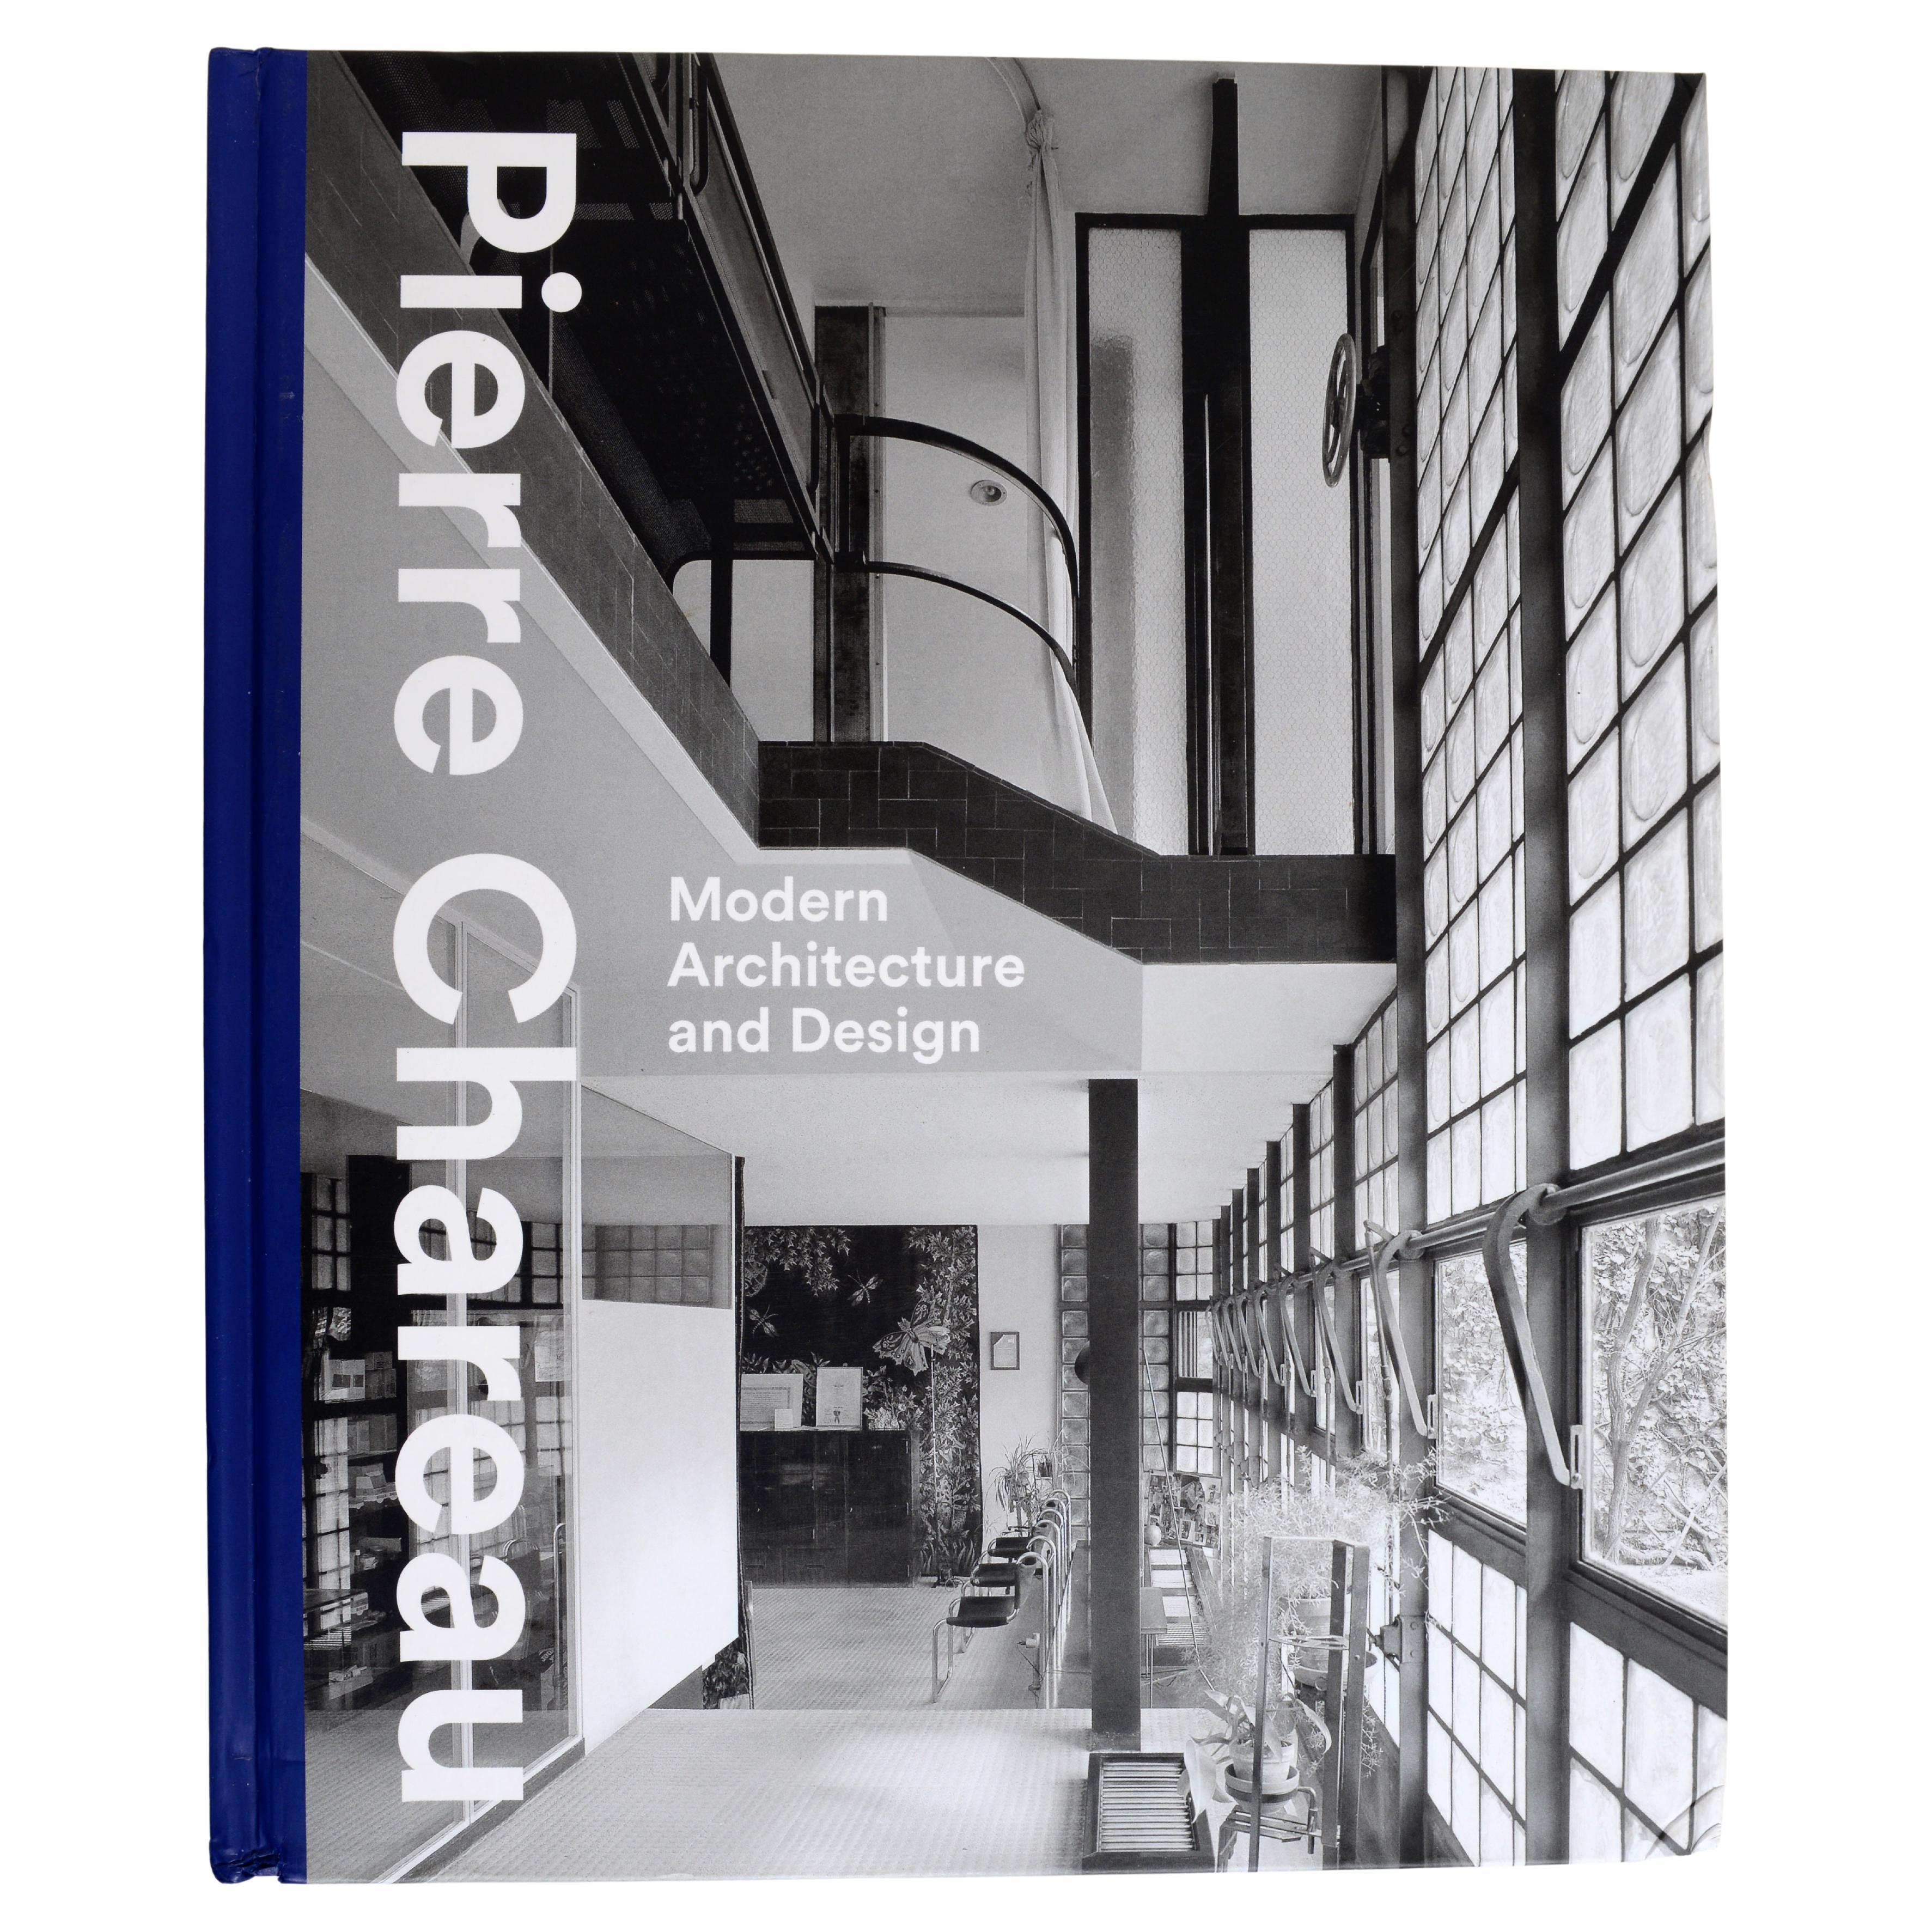 Pierre Chareau Moderne Architektur und Design von Esther da Costa Meyer, 1st Ed